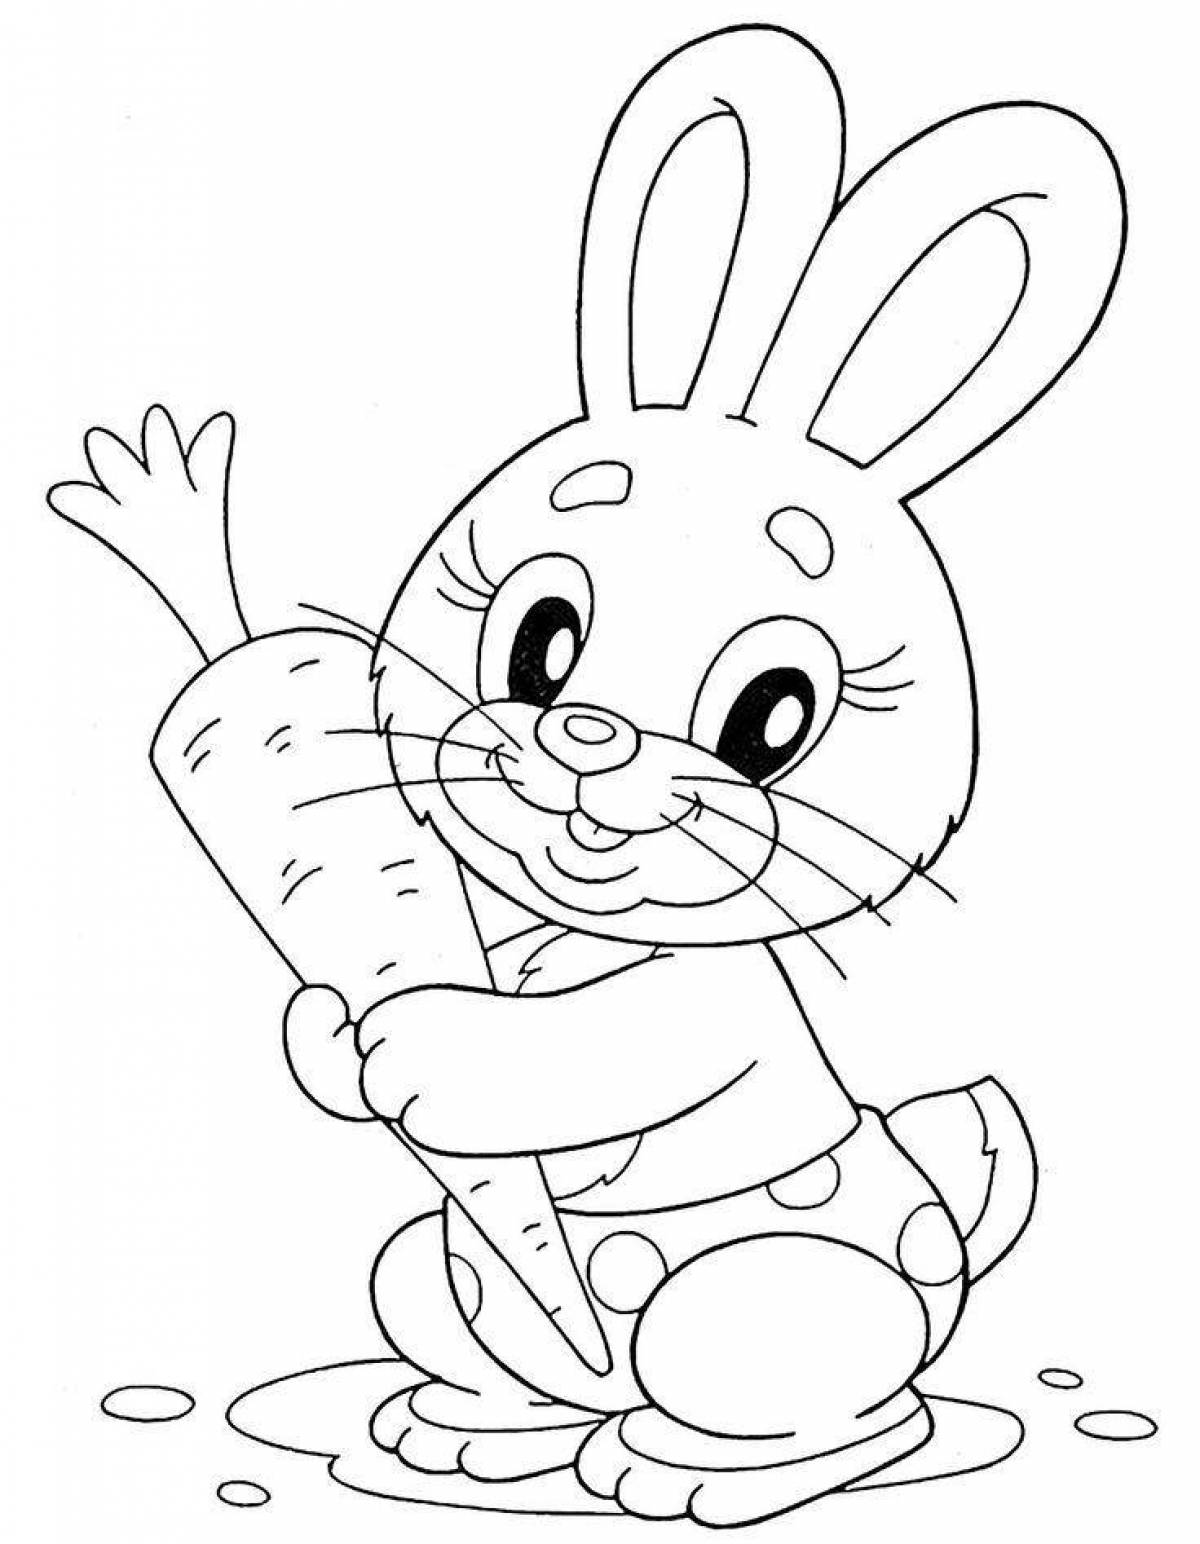 Увлекательная раскраска рисунок кролика